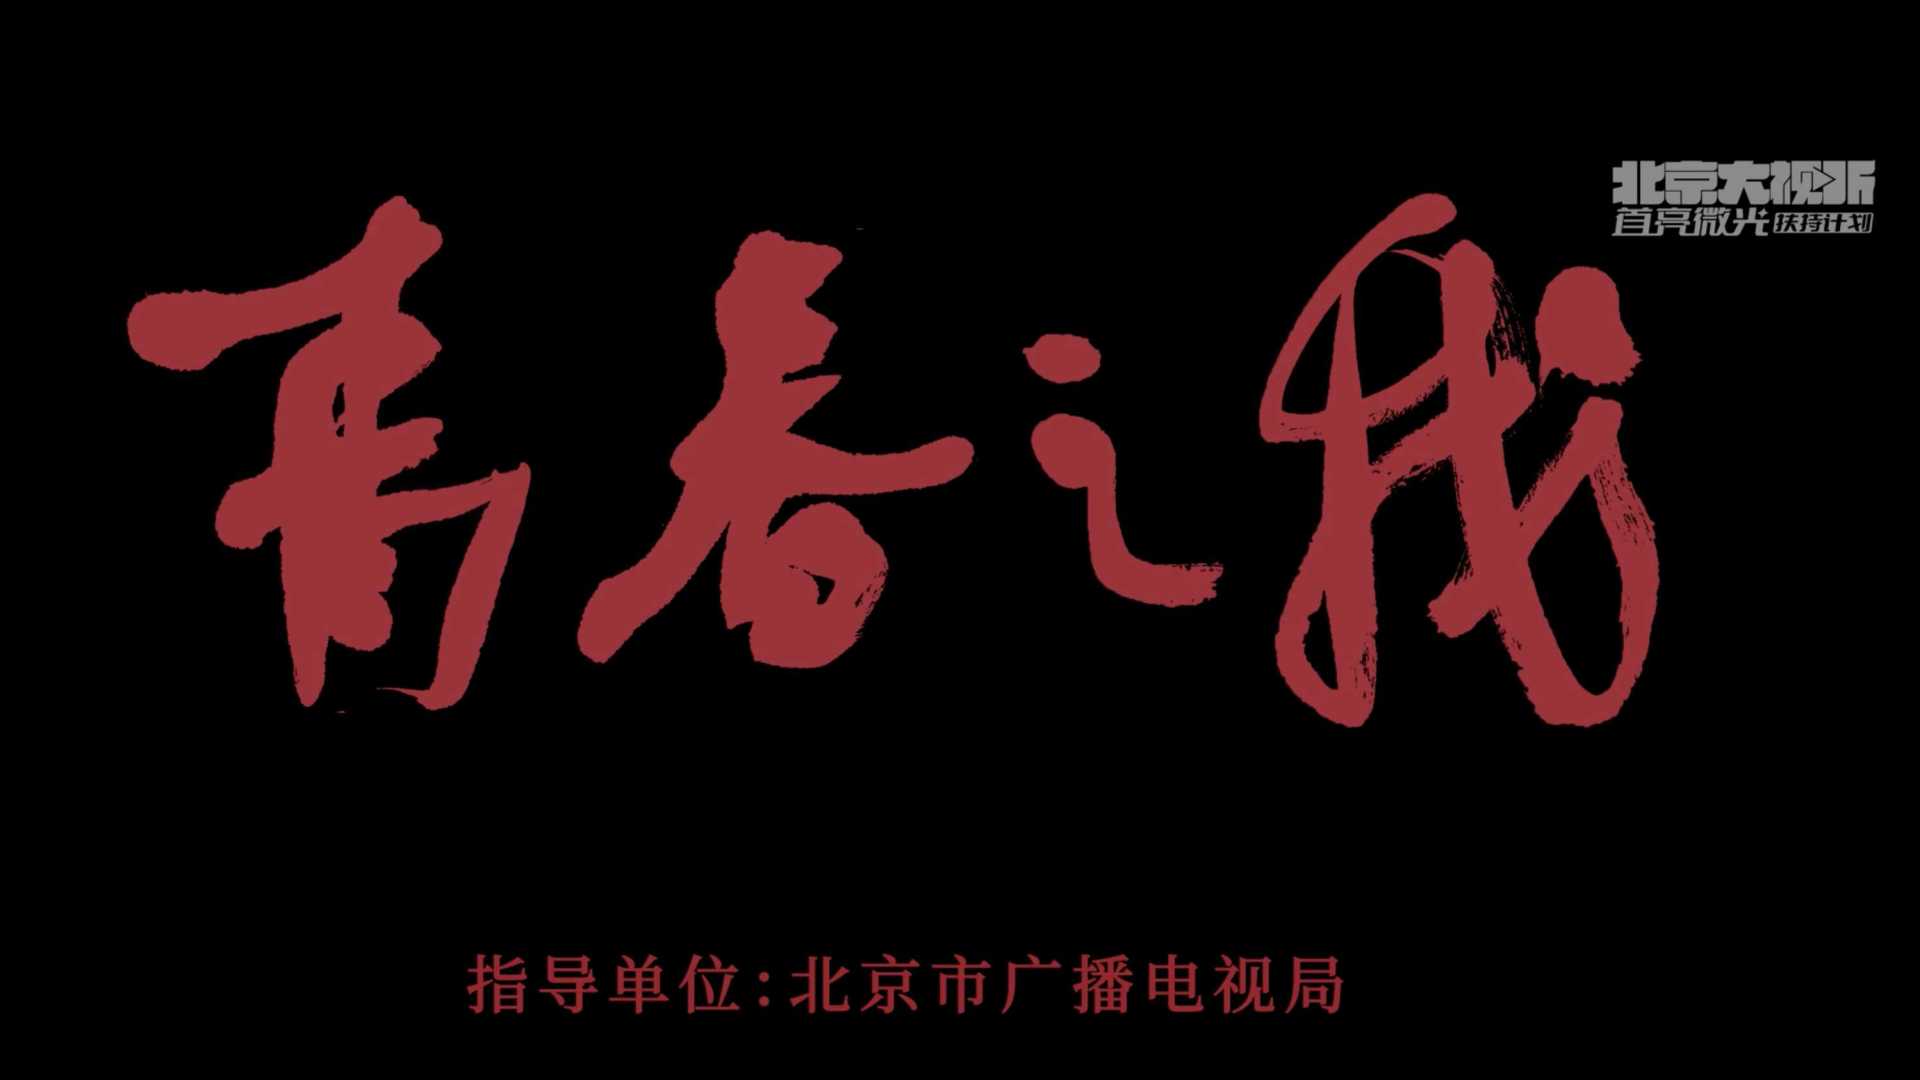 北京市广播电视局重点扶持项目《青春之我》热血版预告